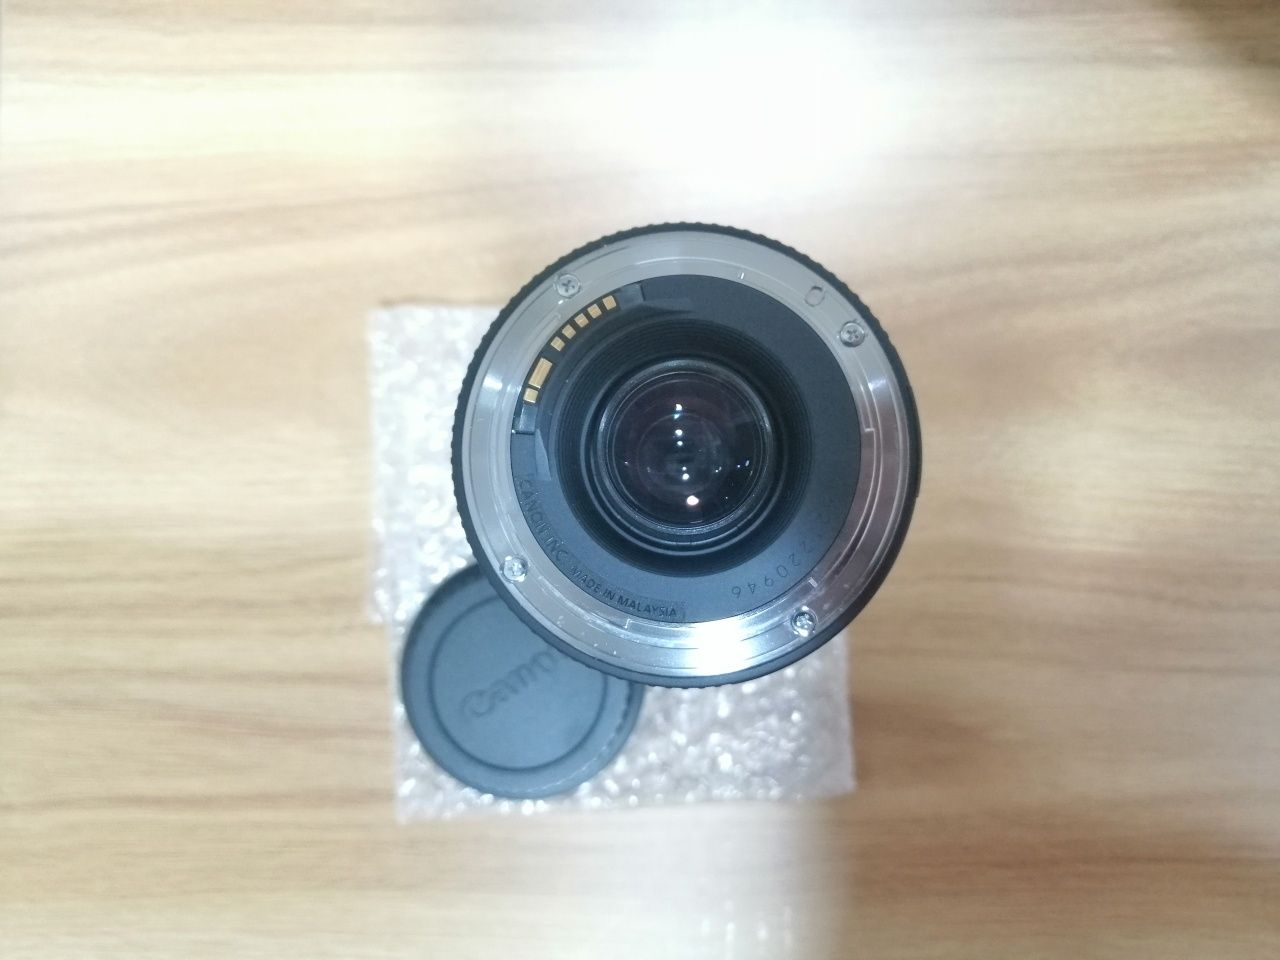 Canon EOS 1200D + Acessórios